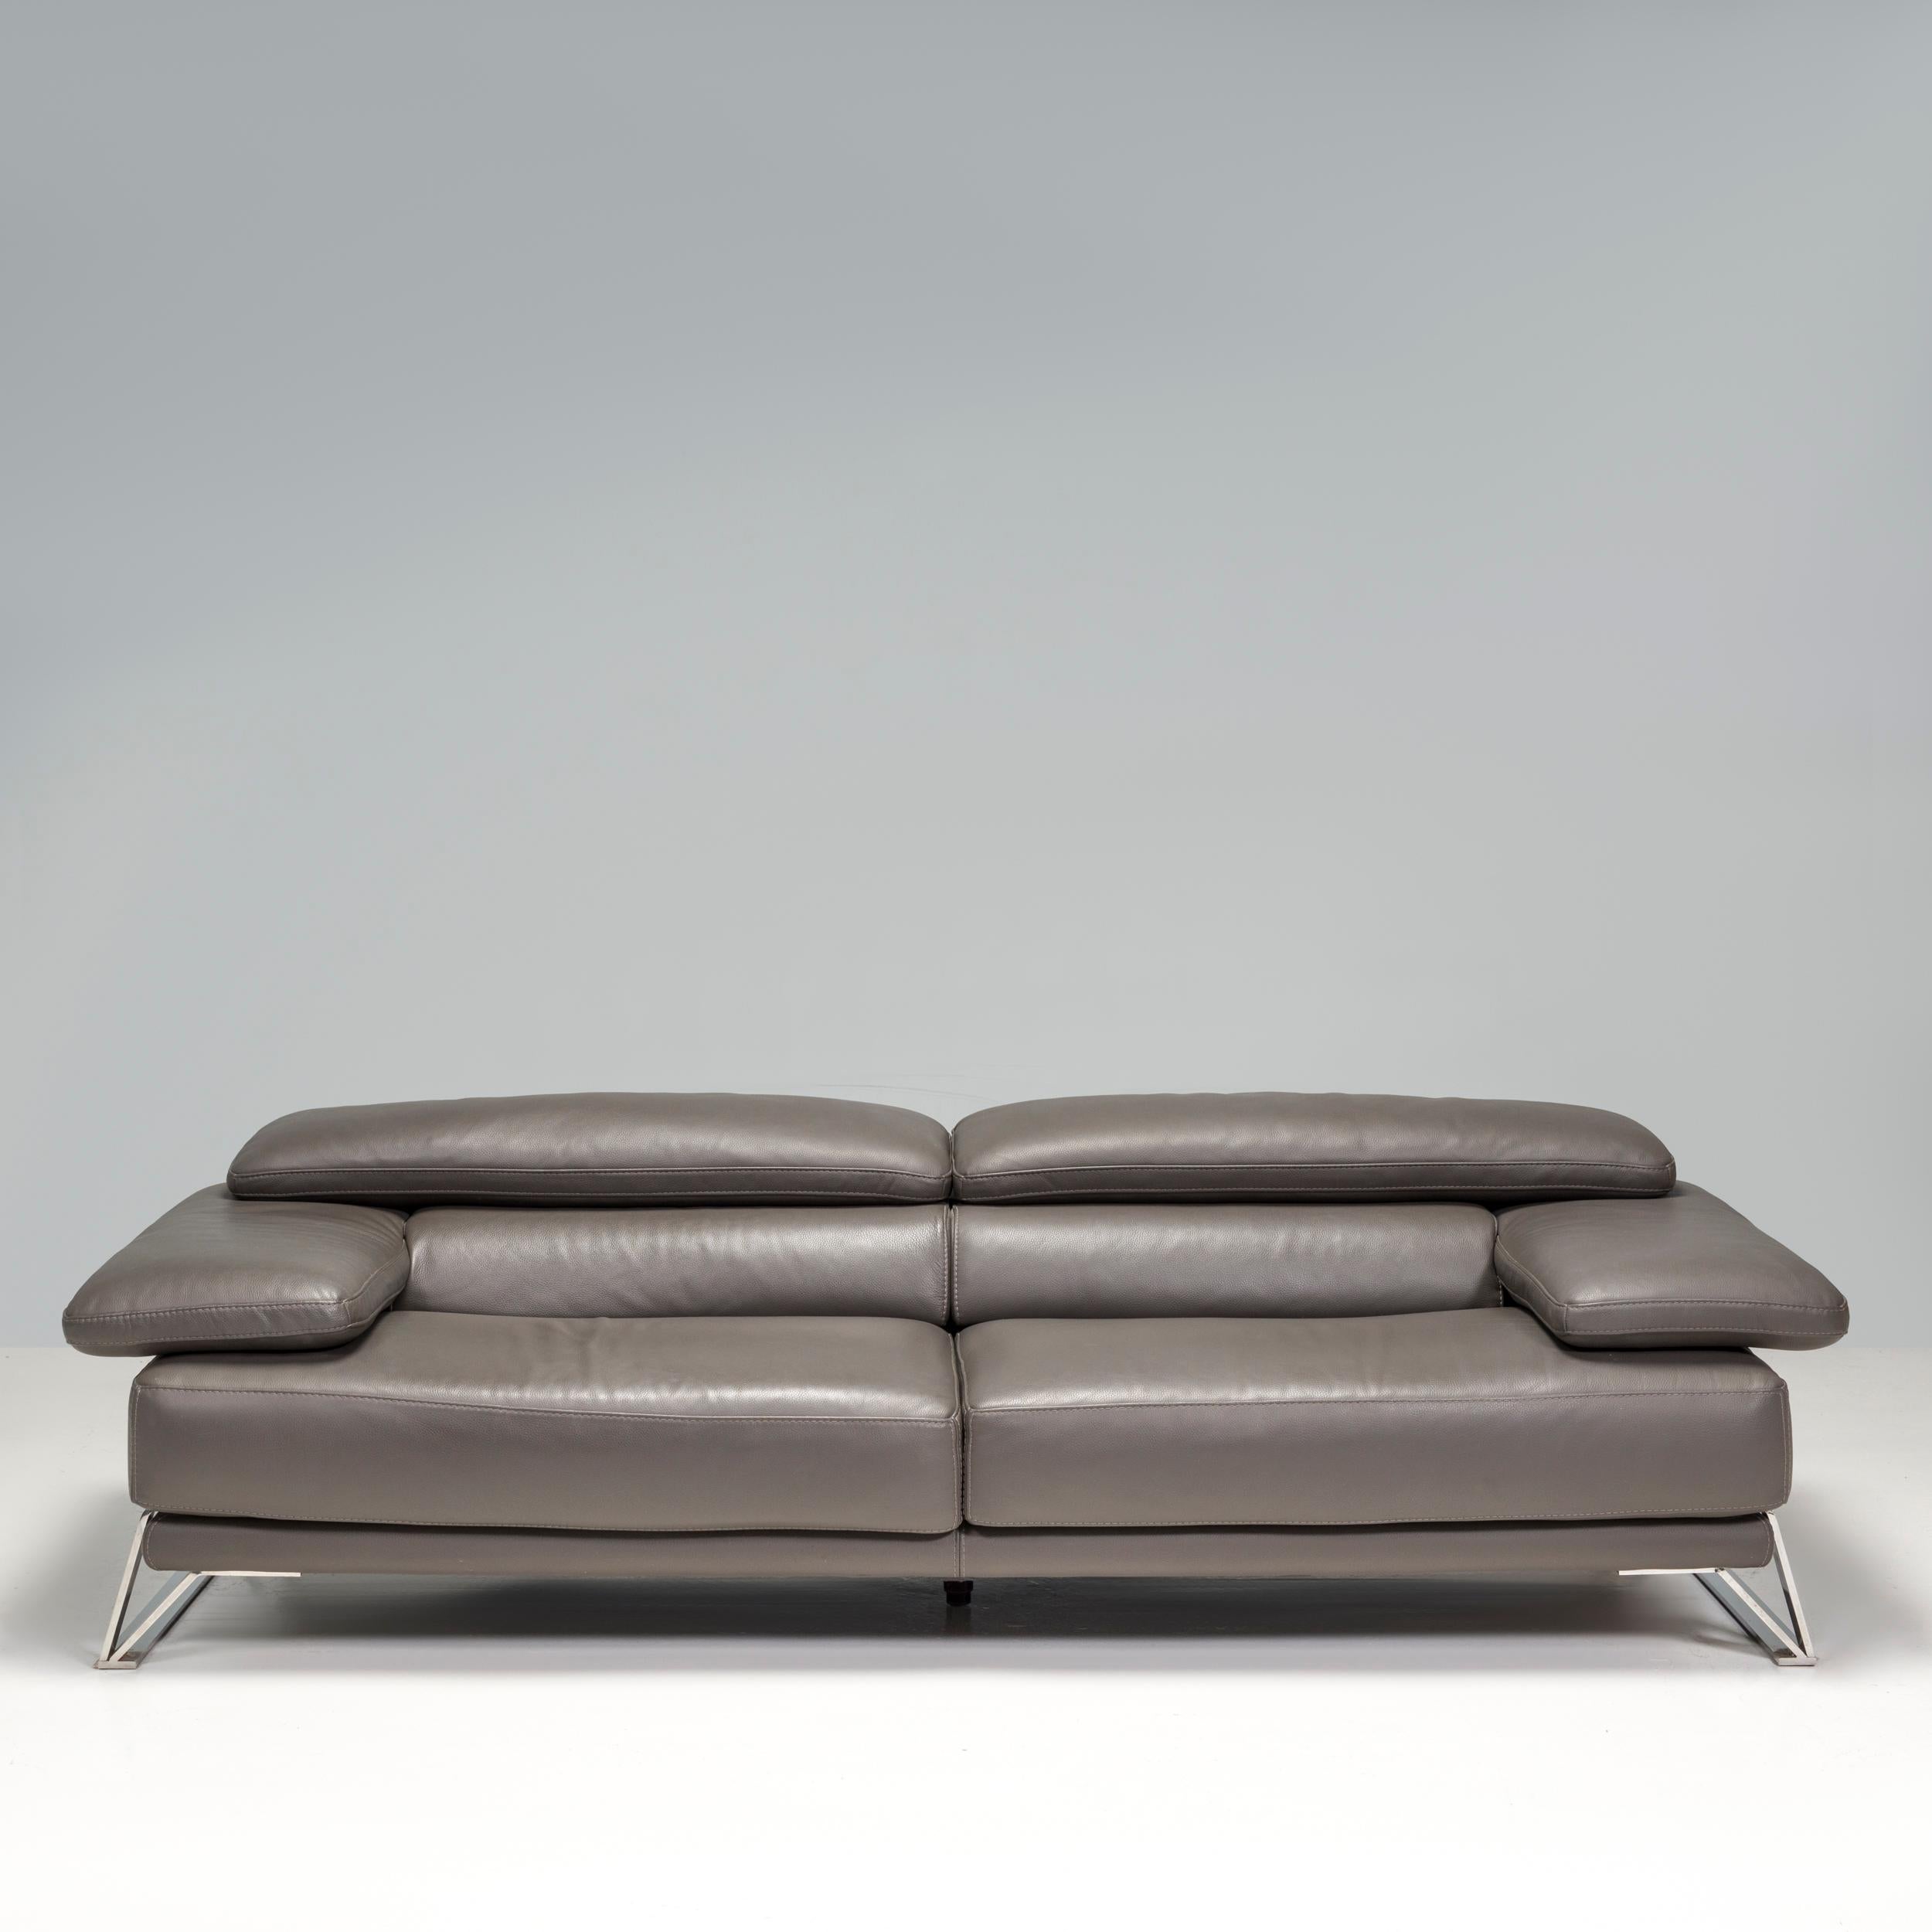 Conçu et fabriqué par Roche Bobois, ce canapé est l'équilibre parfait entre confort et style.

Doté de pieds traîneaux en chrome poli, le canapé est en cuir gris contrasté avec des dossiers réglables.

Rembourré en cuir gris souple, le canapé est